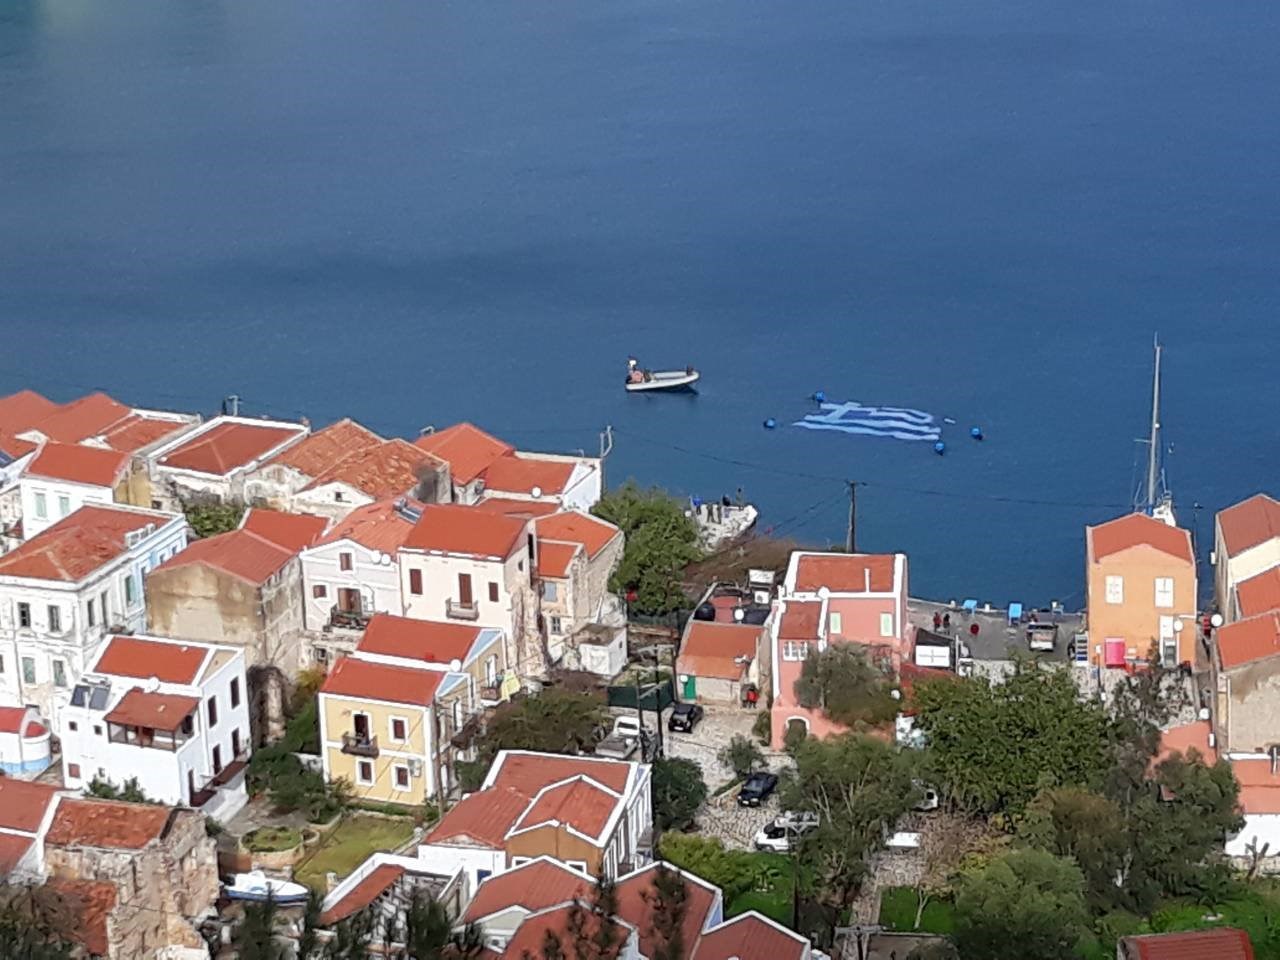 Στο Καστελόριζο η μεγαλύτερη υποβρύχια ελληνική σημαία – ΦΩΤΟ - Φωτογραφία 3